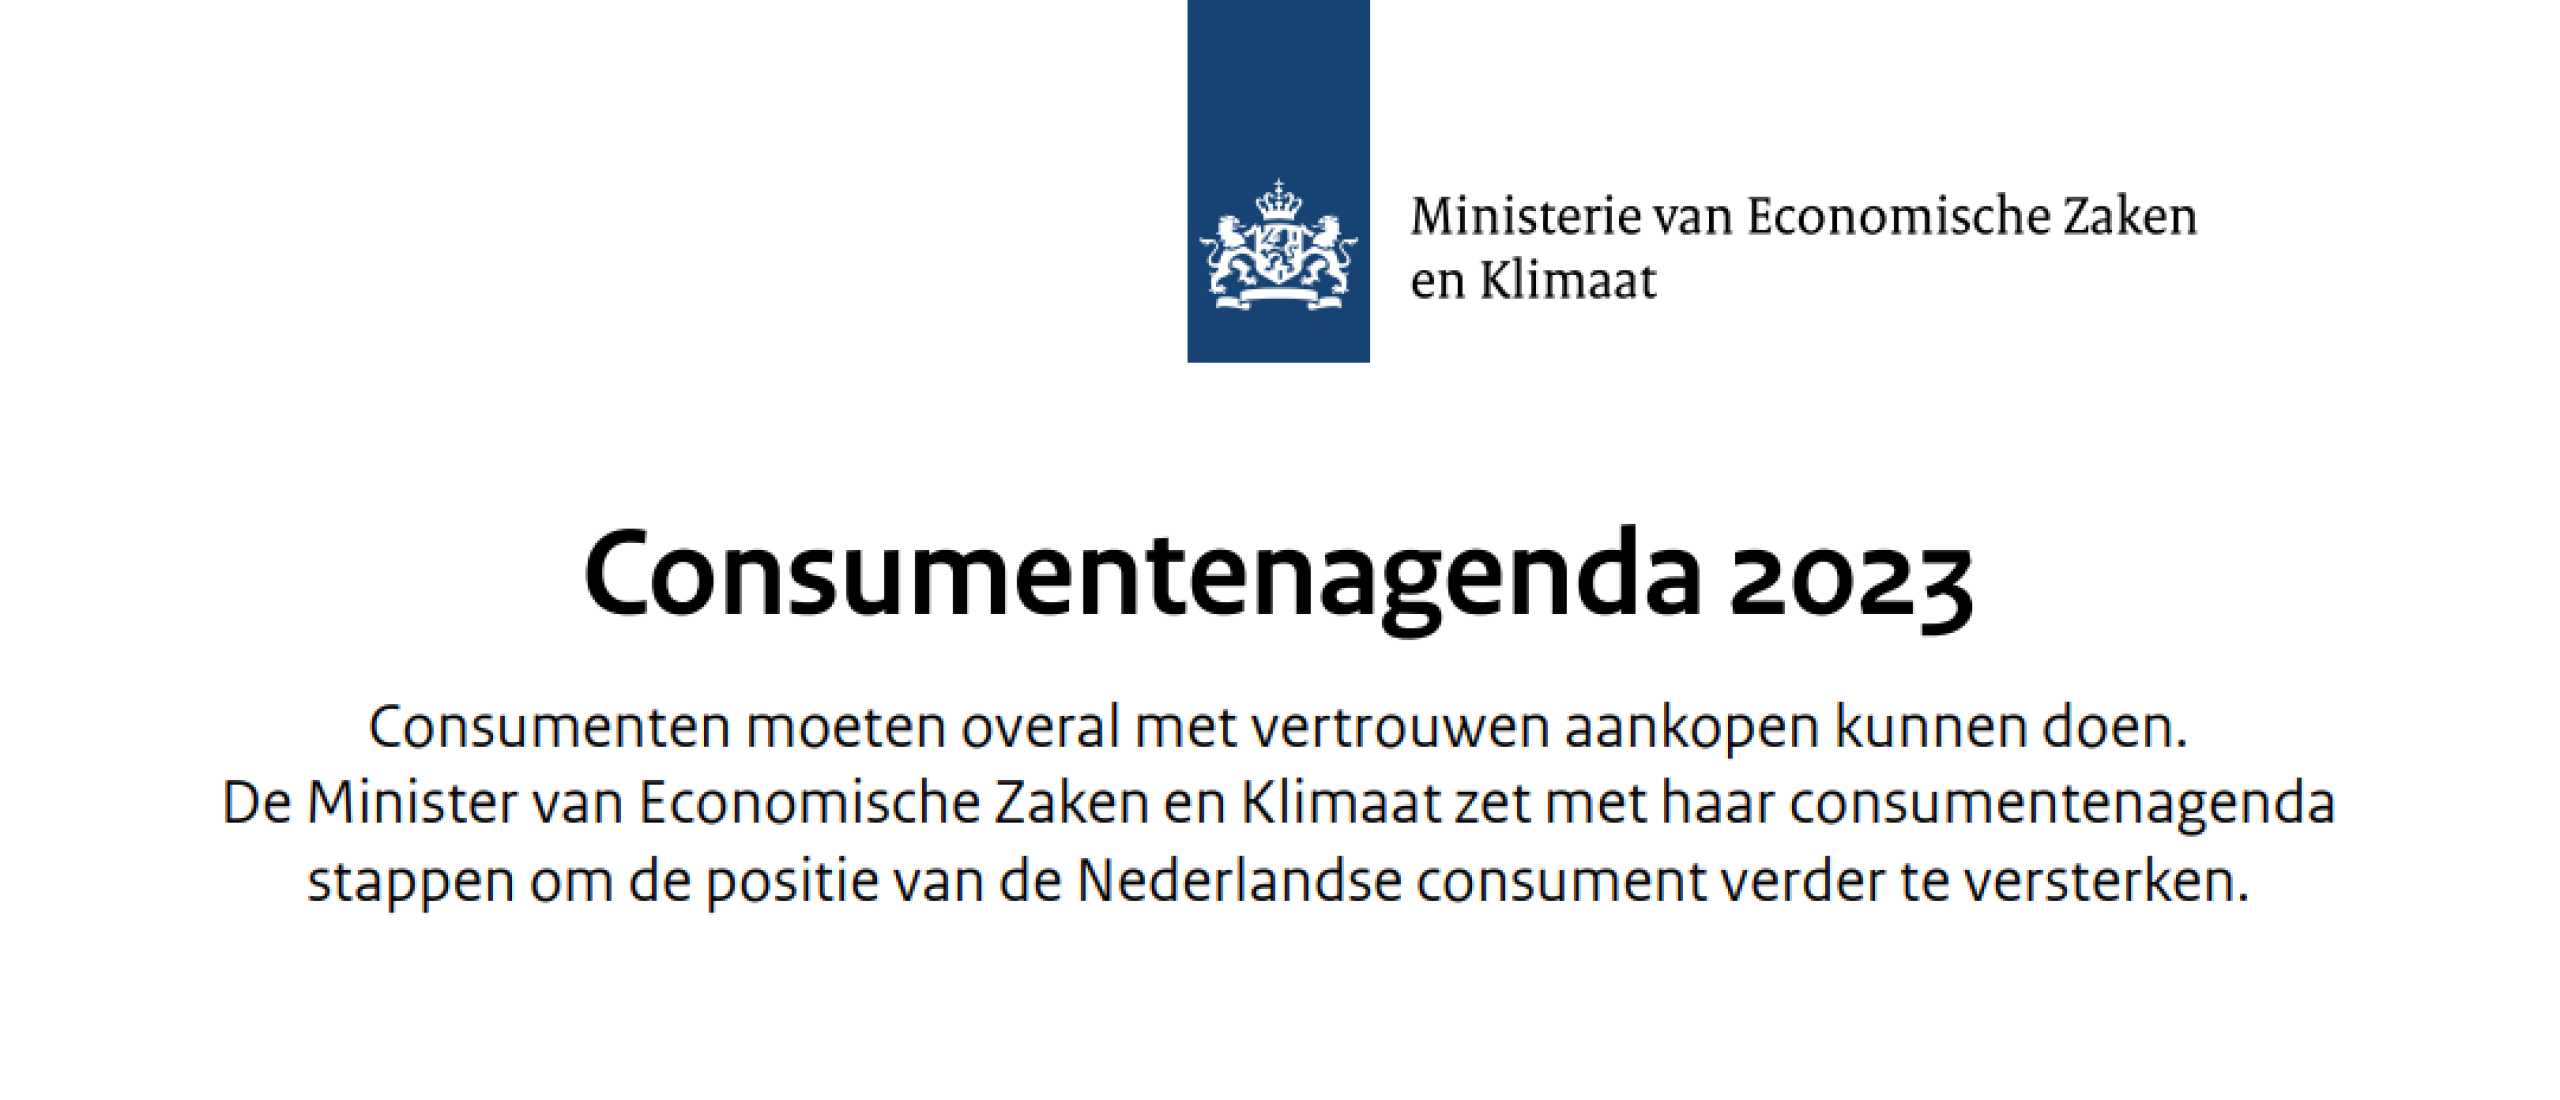 Kamerbrief Nederlandse Consumentenagenda: denk je mee over onze input?